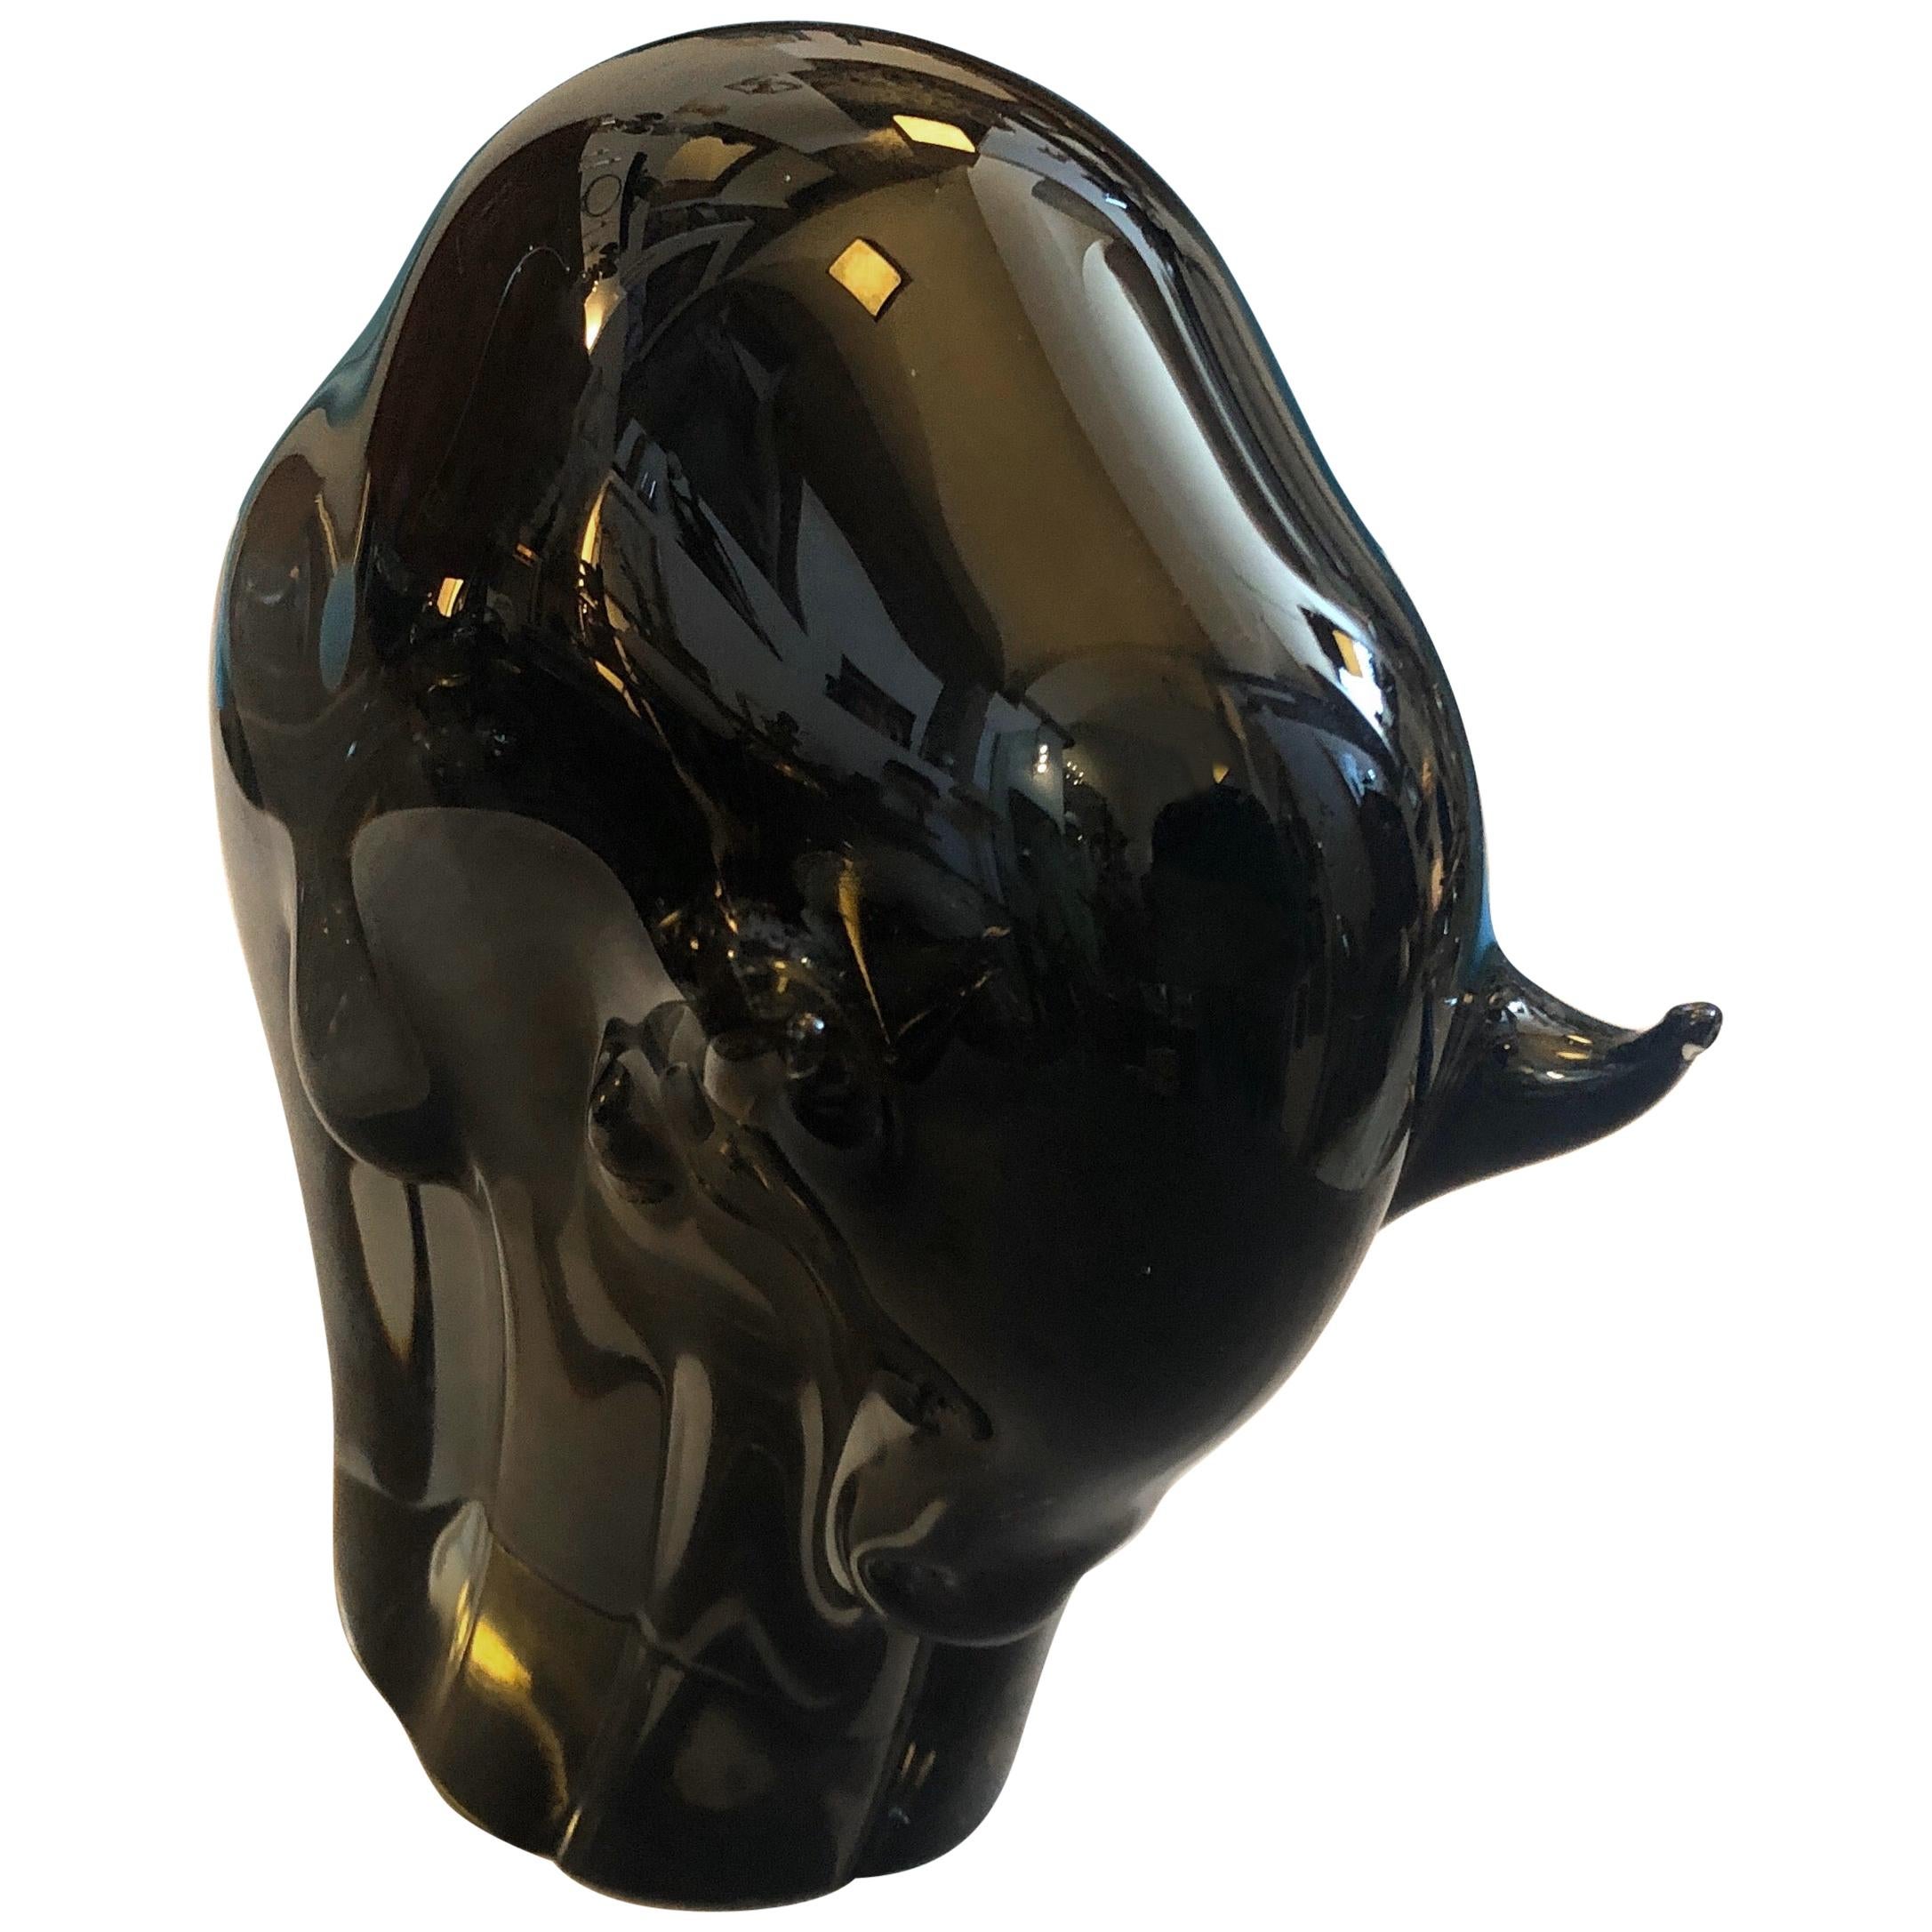 1970s Livio Seguso Mid-Century Modern Brown Murano Glass Bull